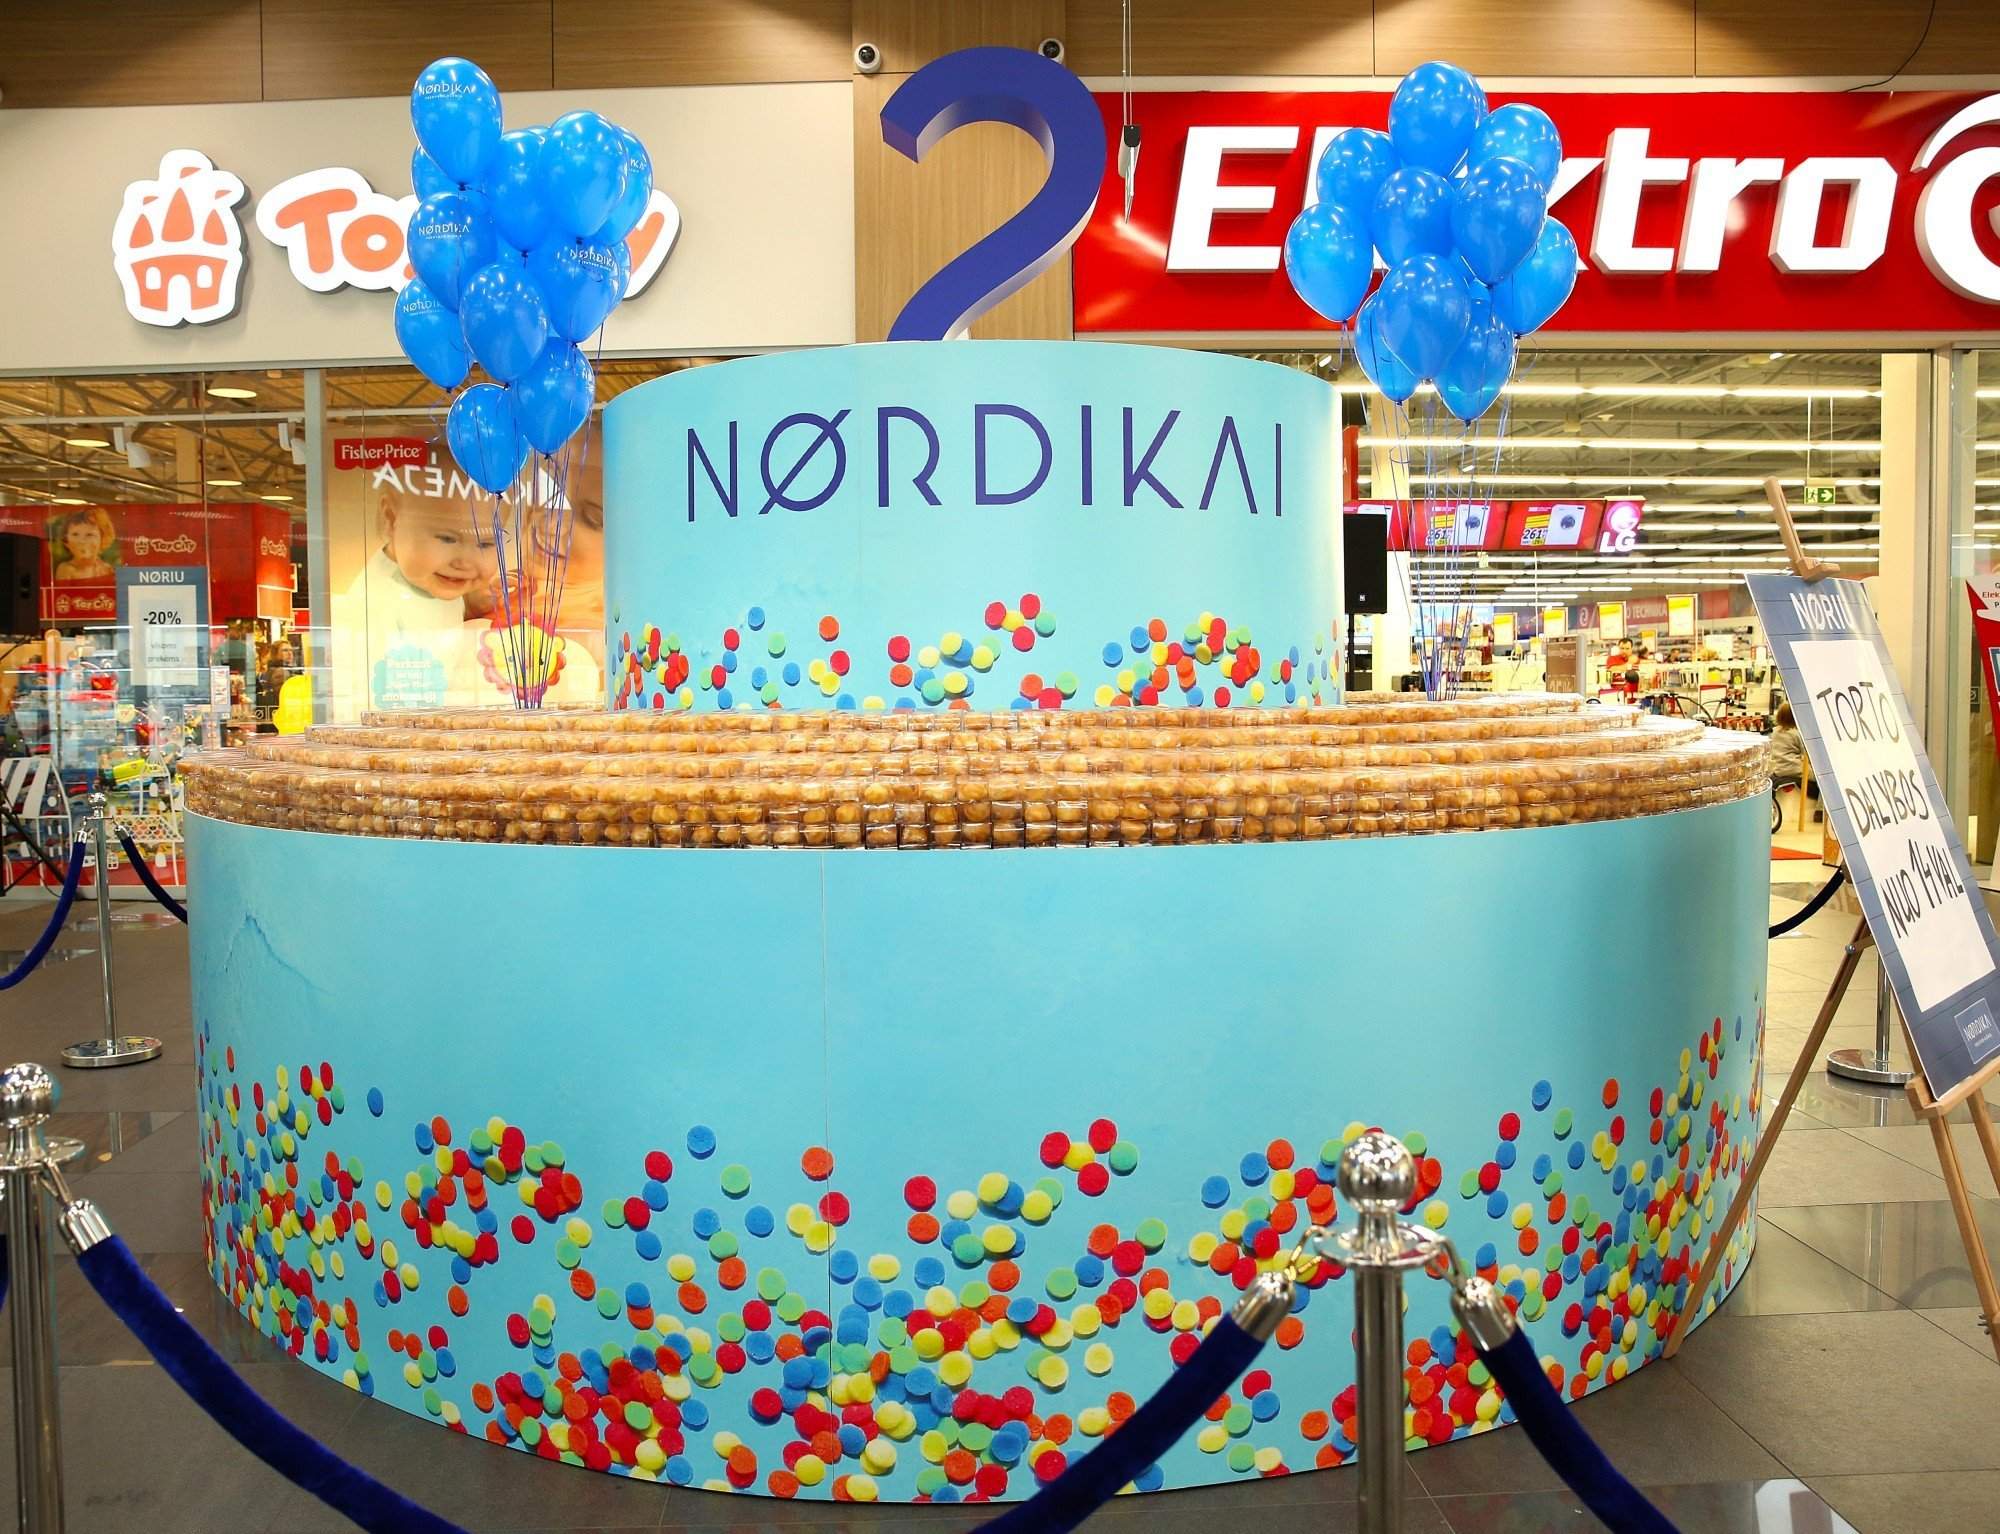 Nordika's birthday